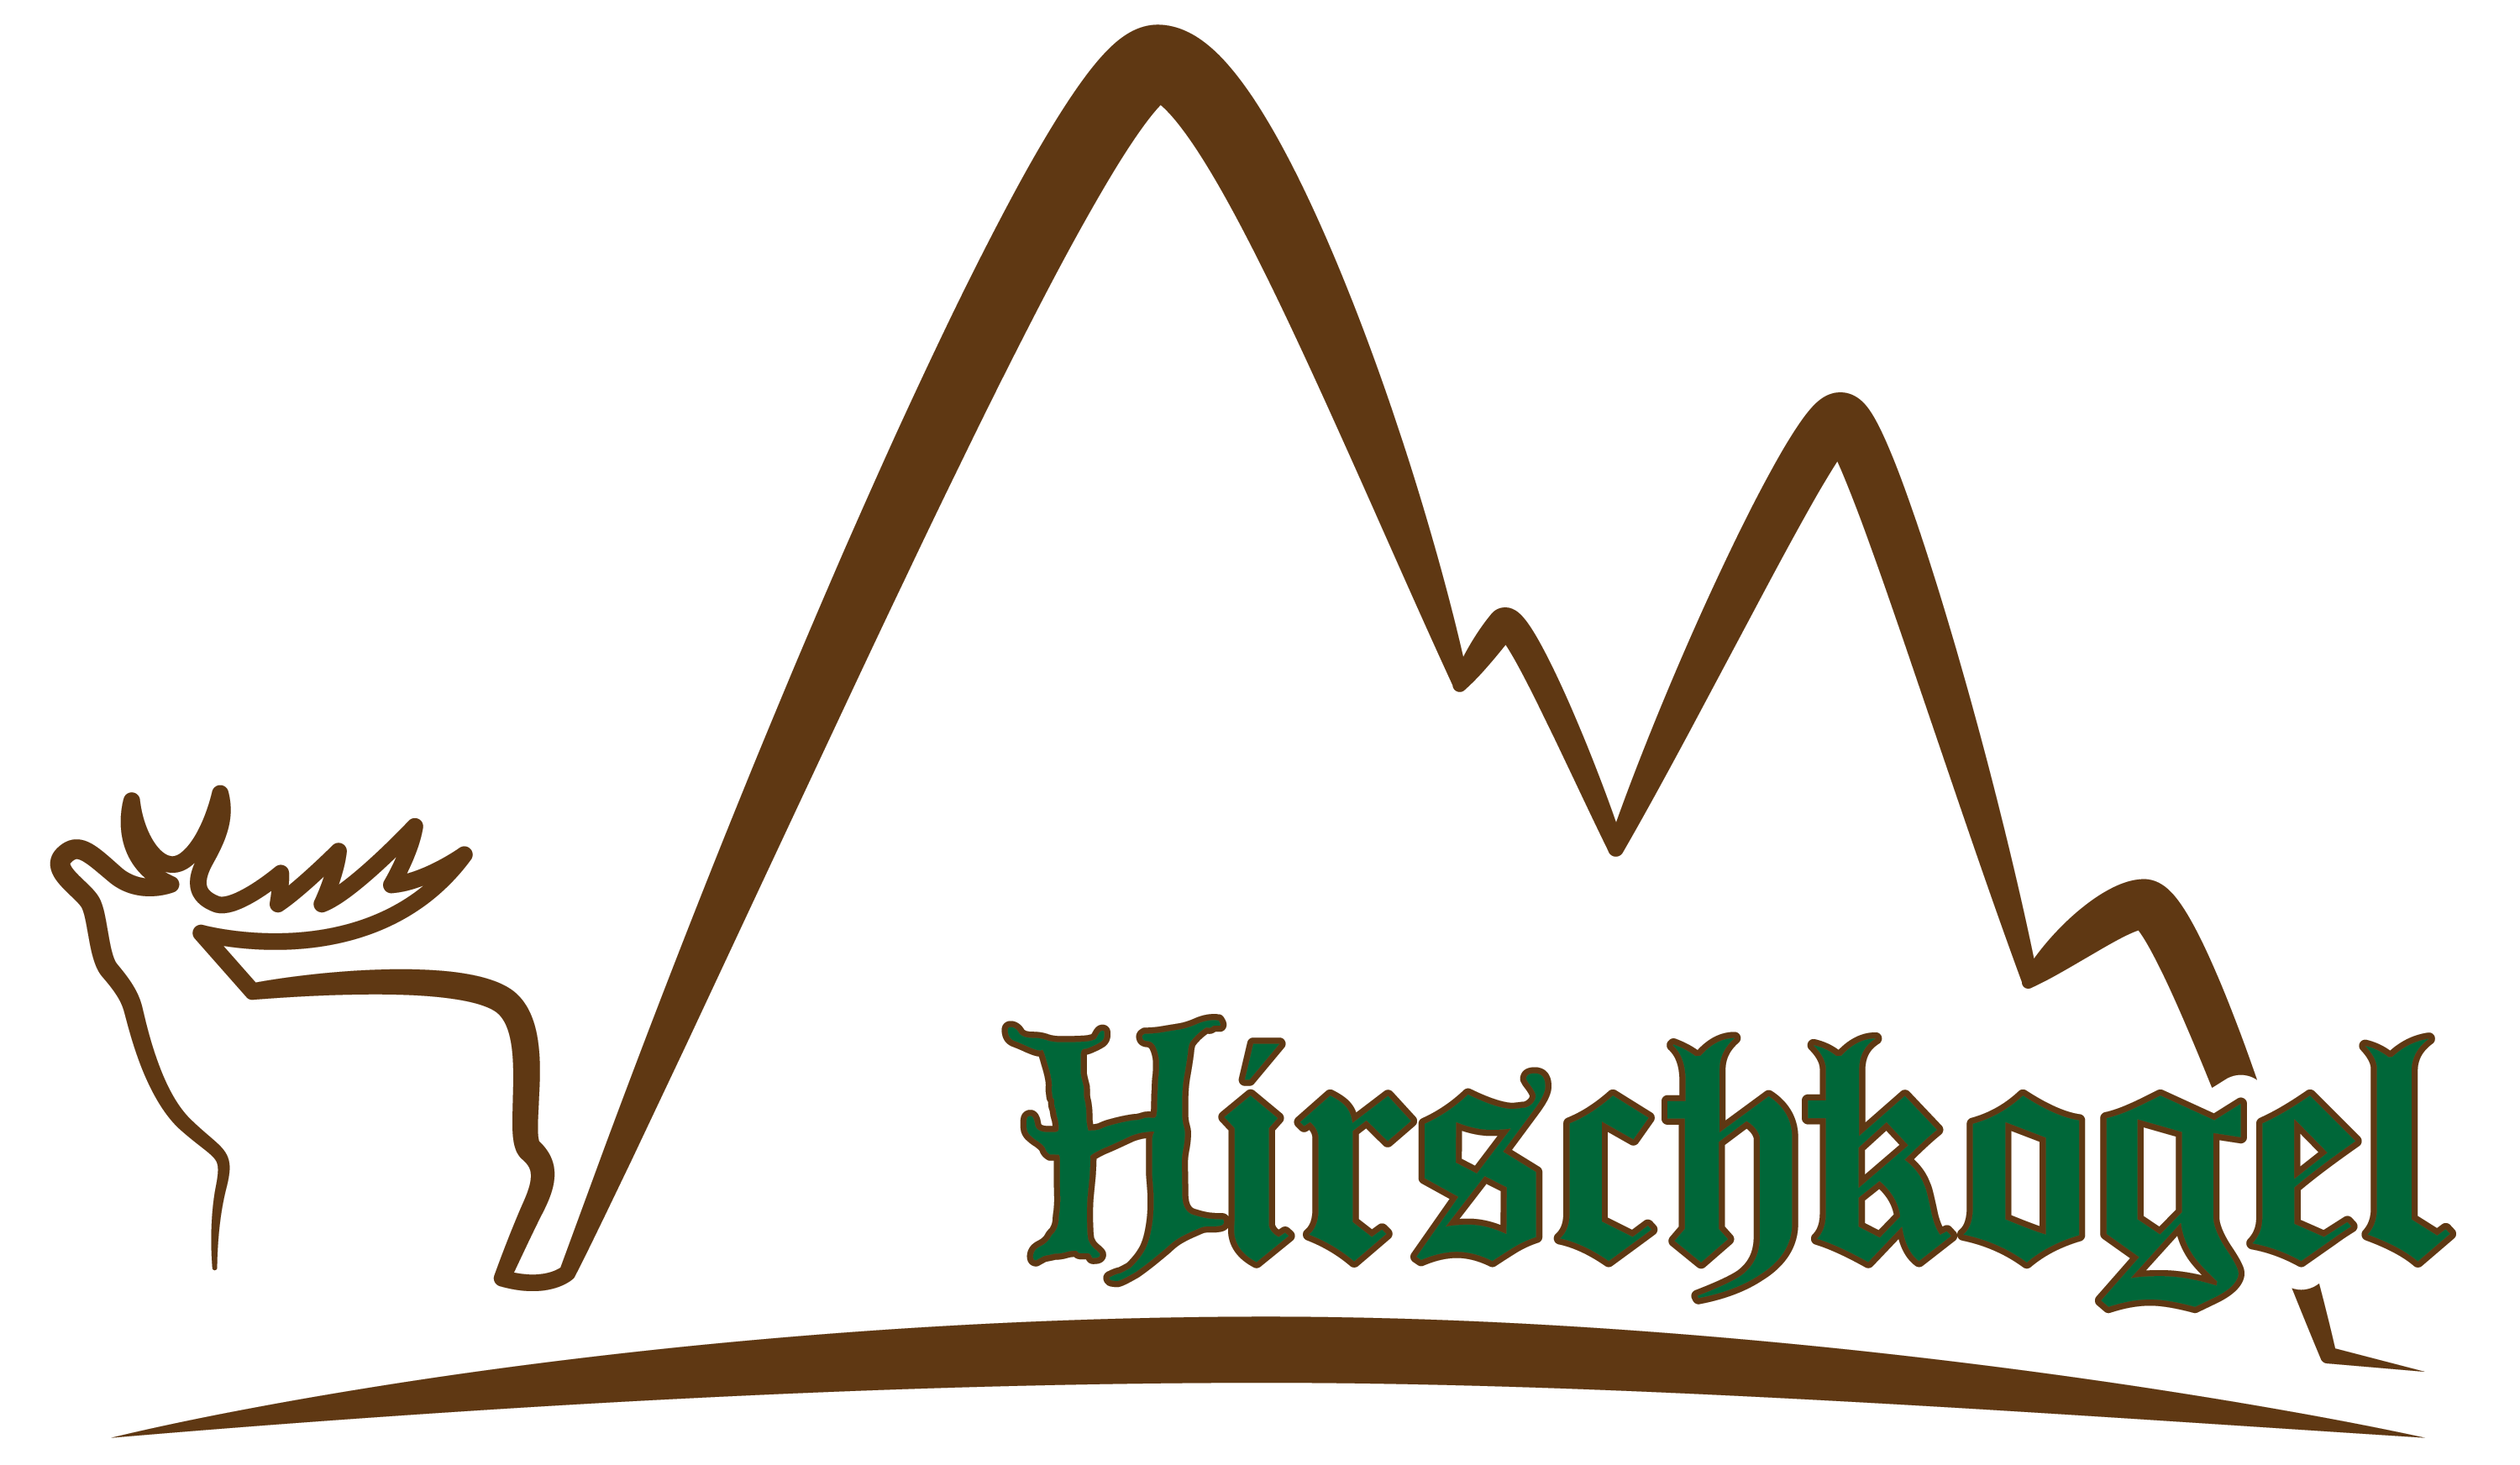 Hirschkogel